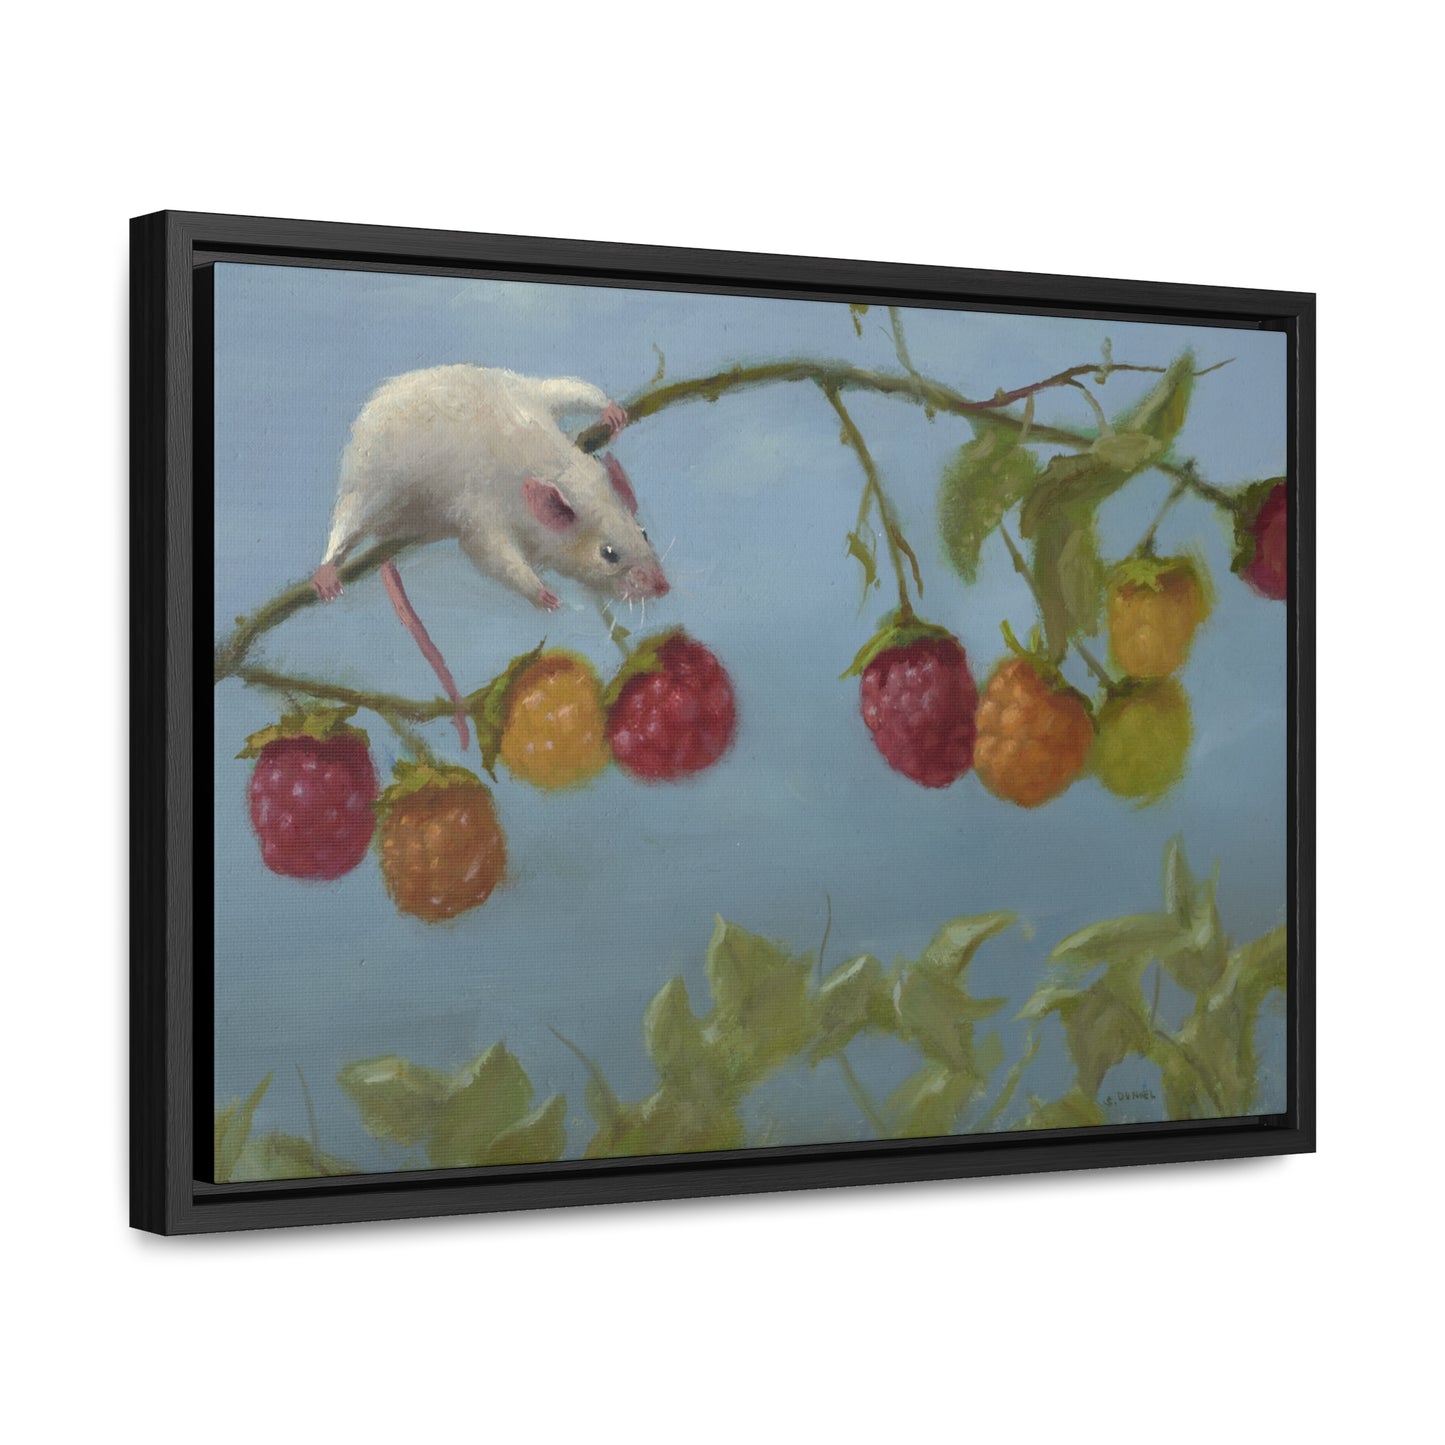 Stuart Dunkel: "Berry Picker" - Framed Canvas Reproduction